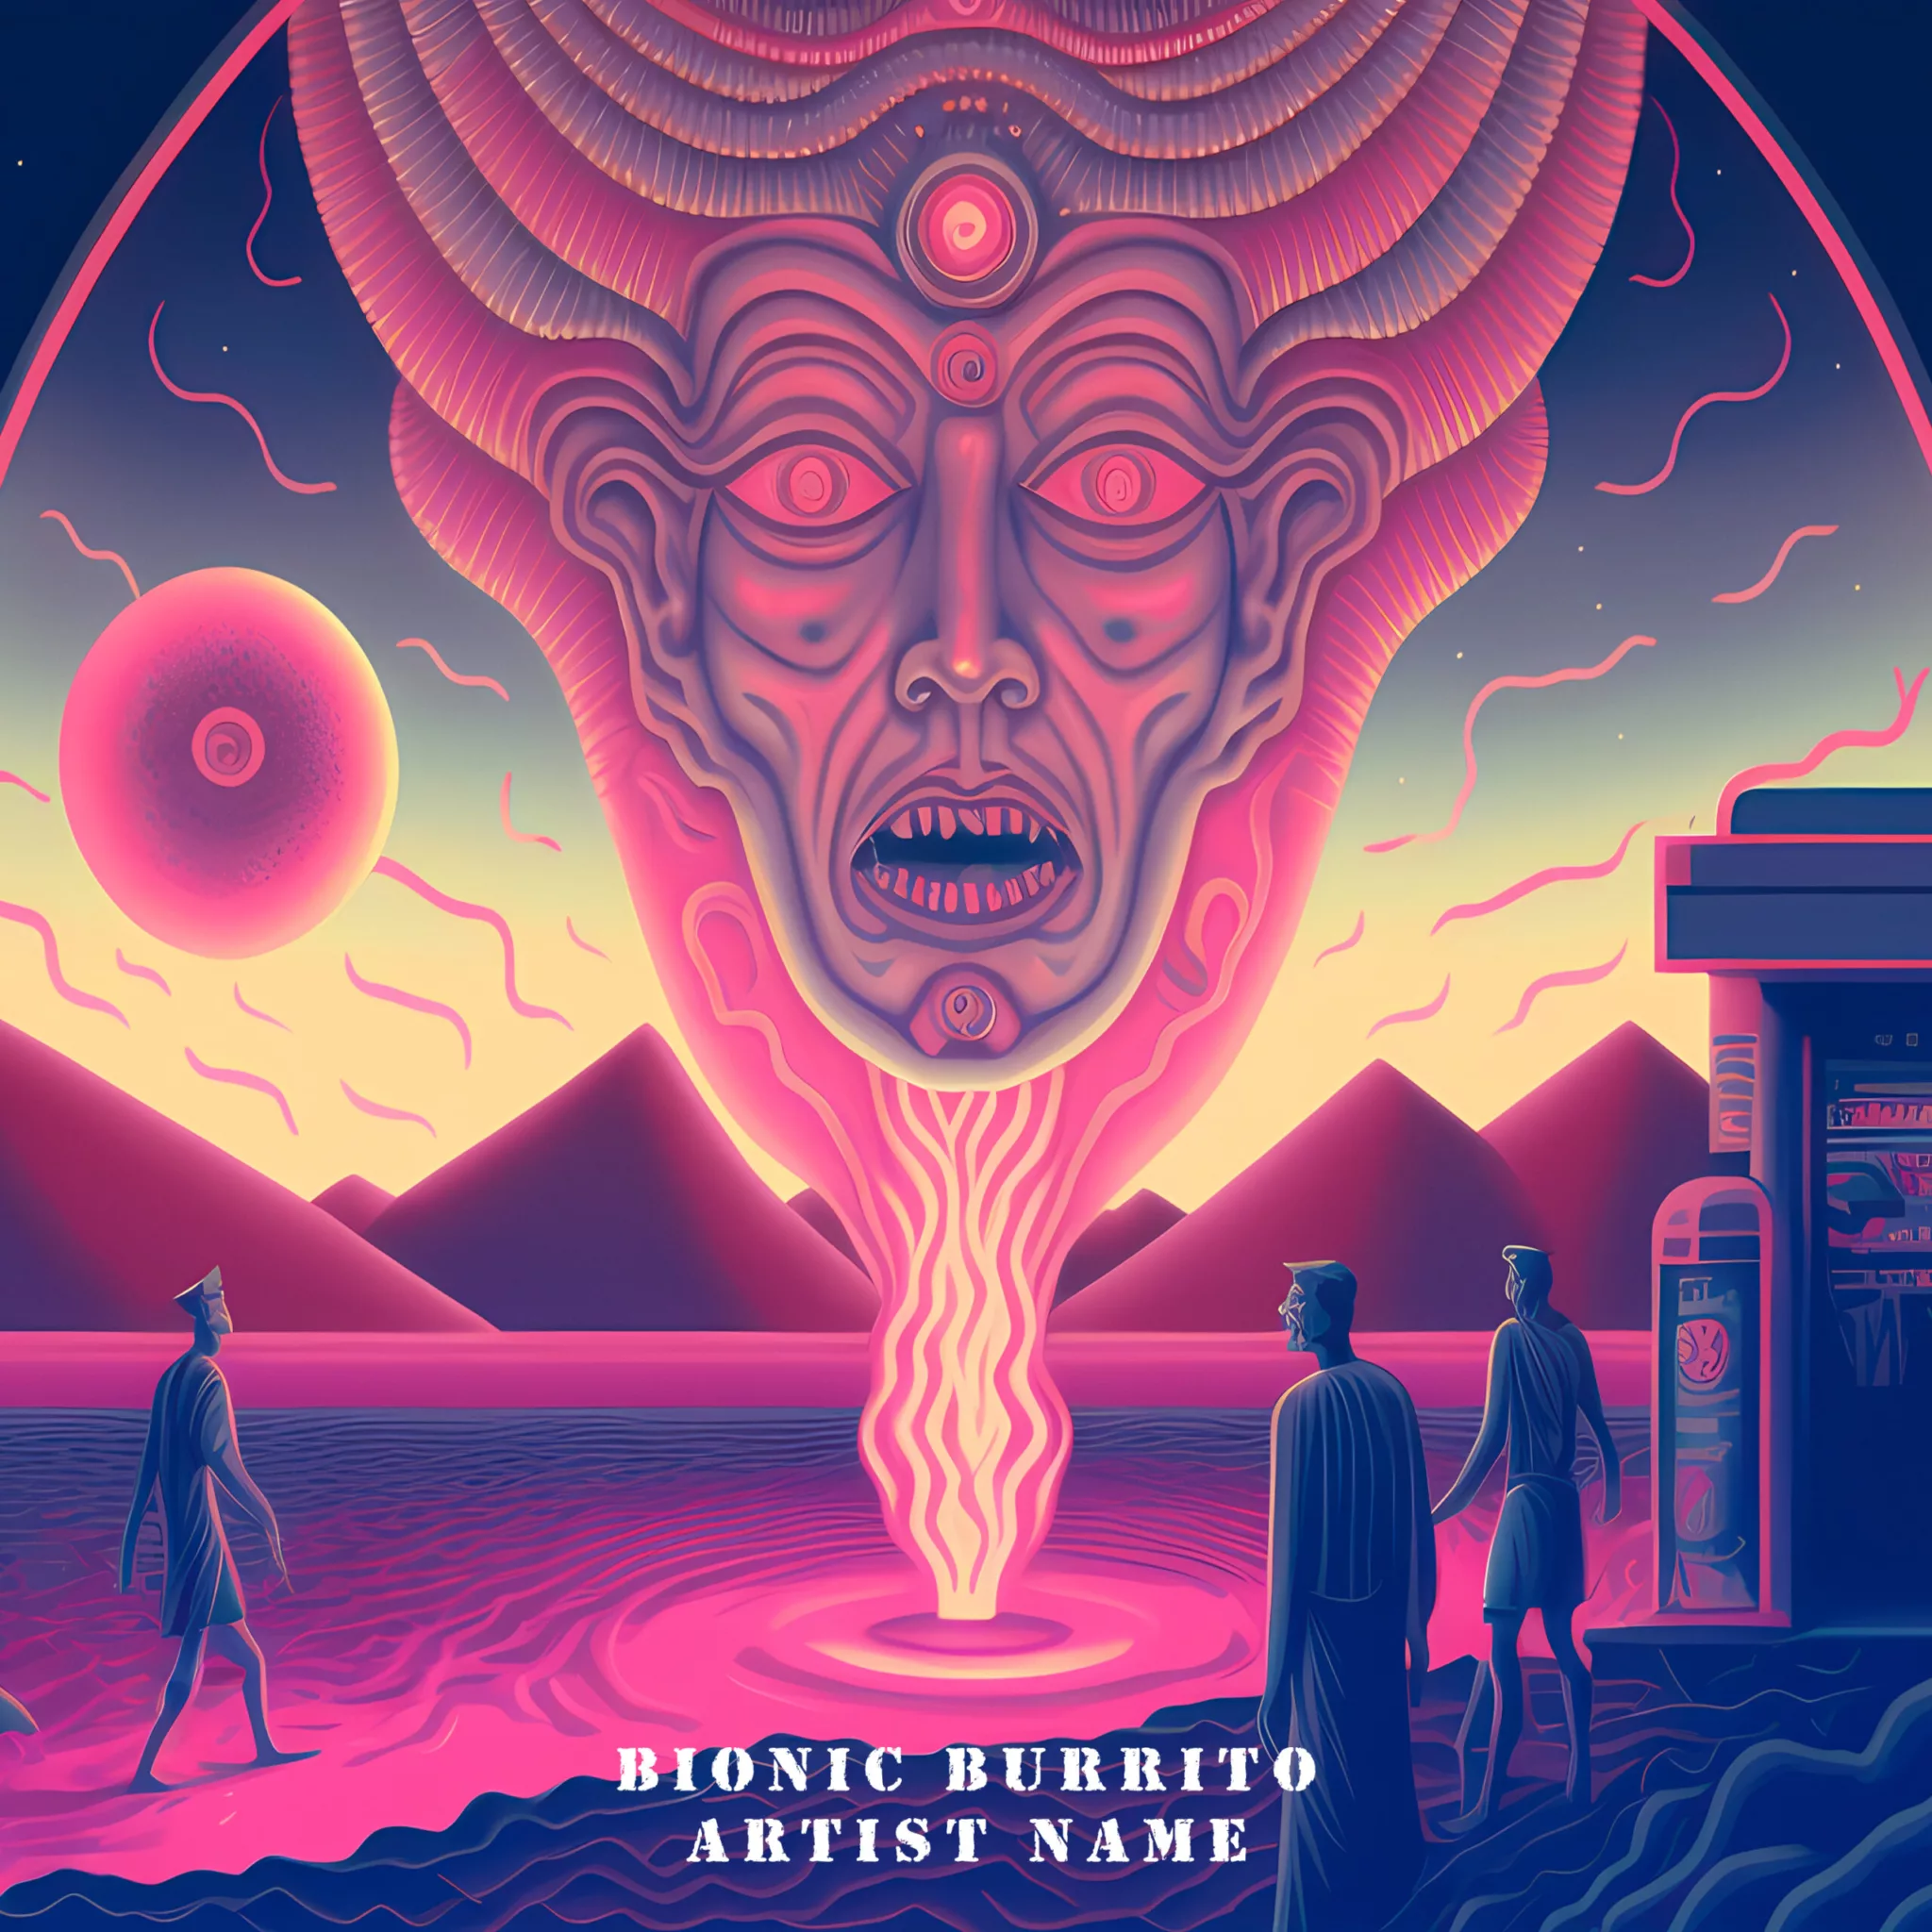 Bionic Burrito Album Cover Art Design – CoverArtworks